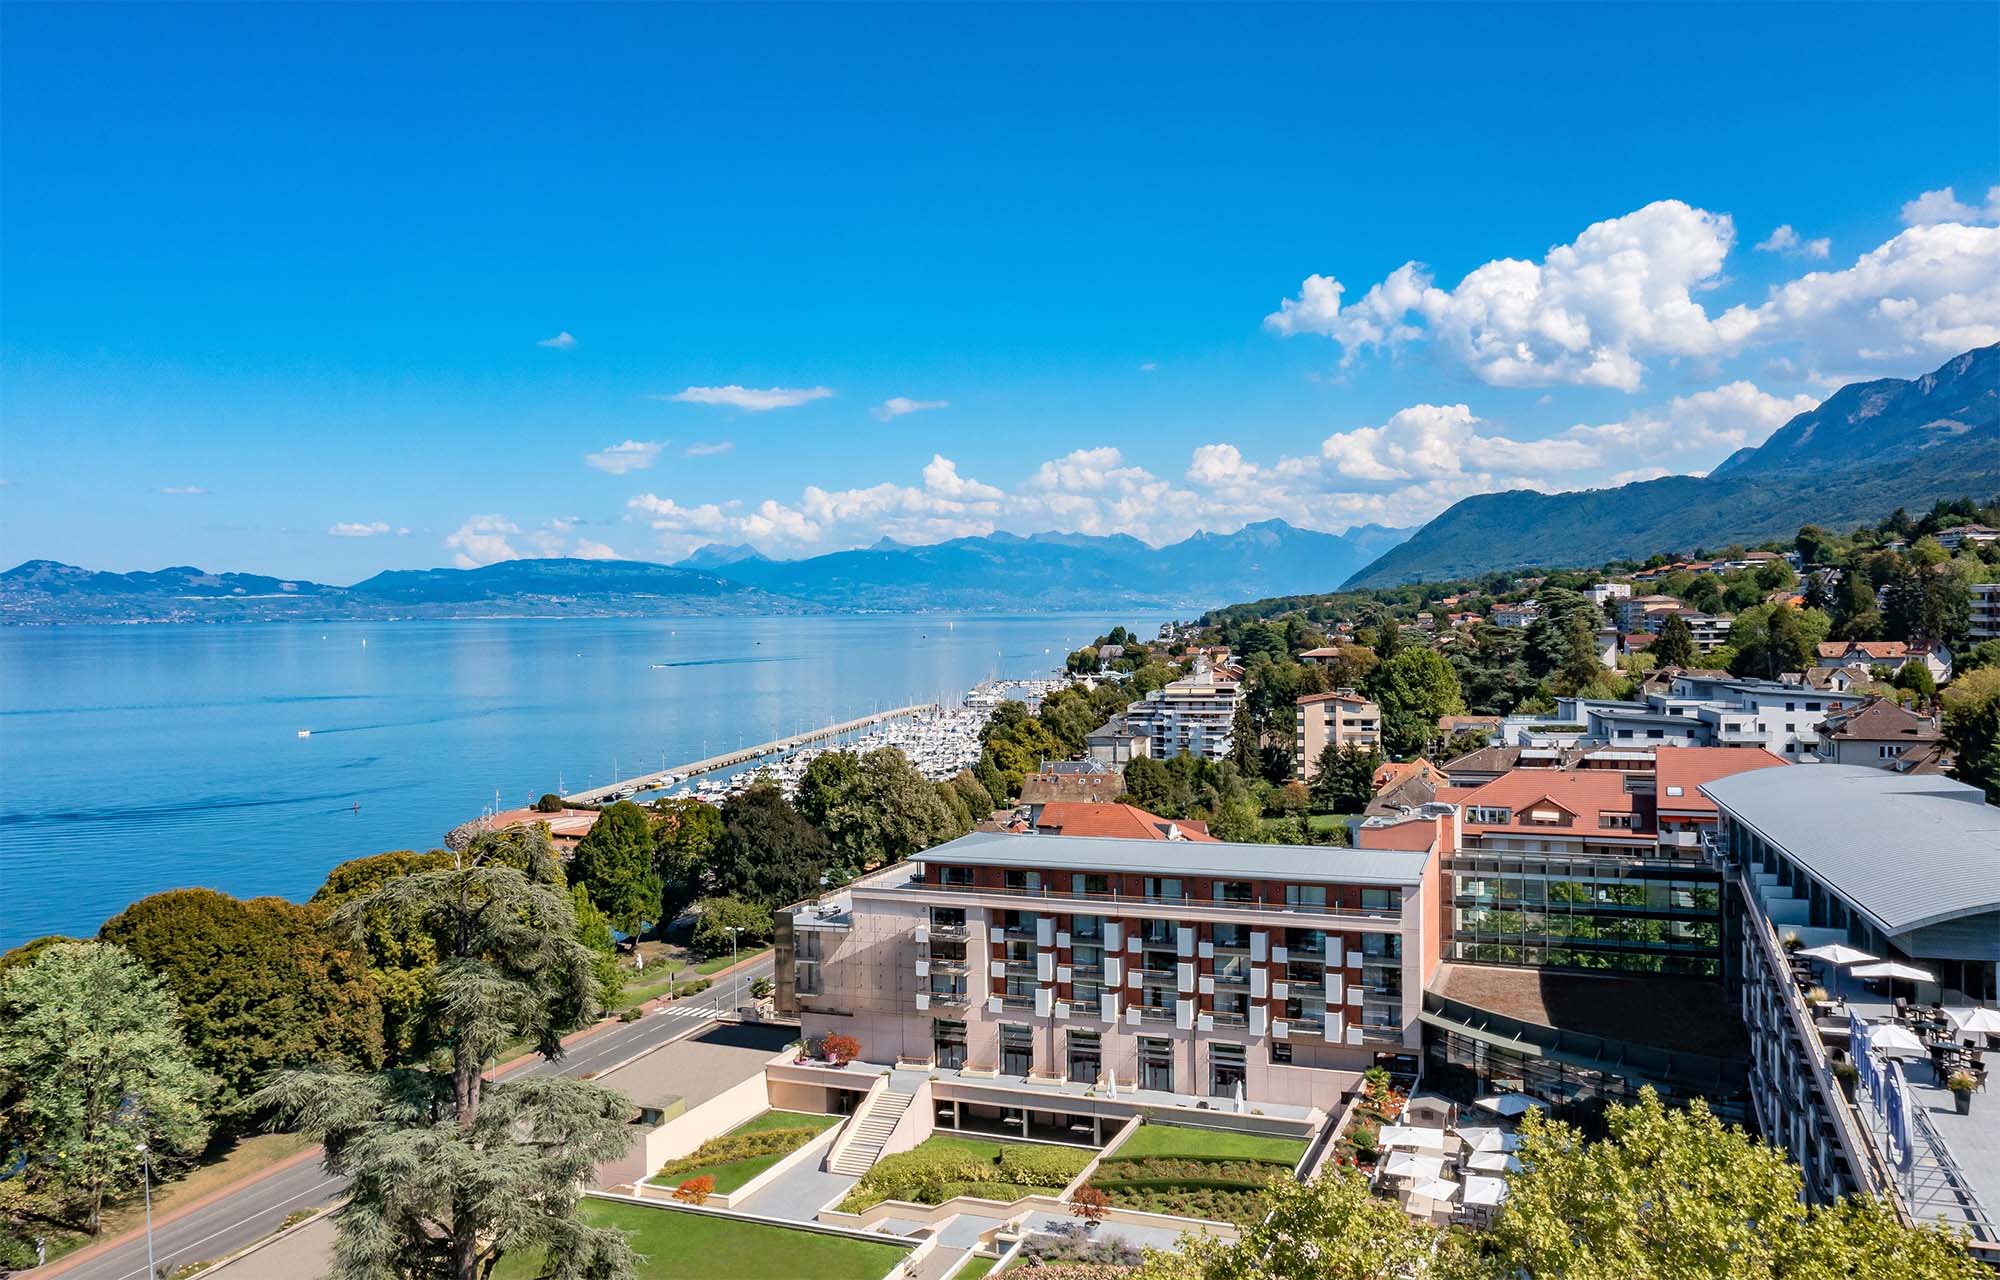 Situé sur les rives du Lac Léman, au pied des Alpes françaises l'hôtel Hilton Évian-les-Bains propose une vue panoramique et un cadre magnifique pour vos séminaires